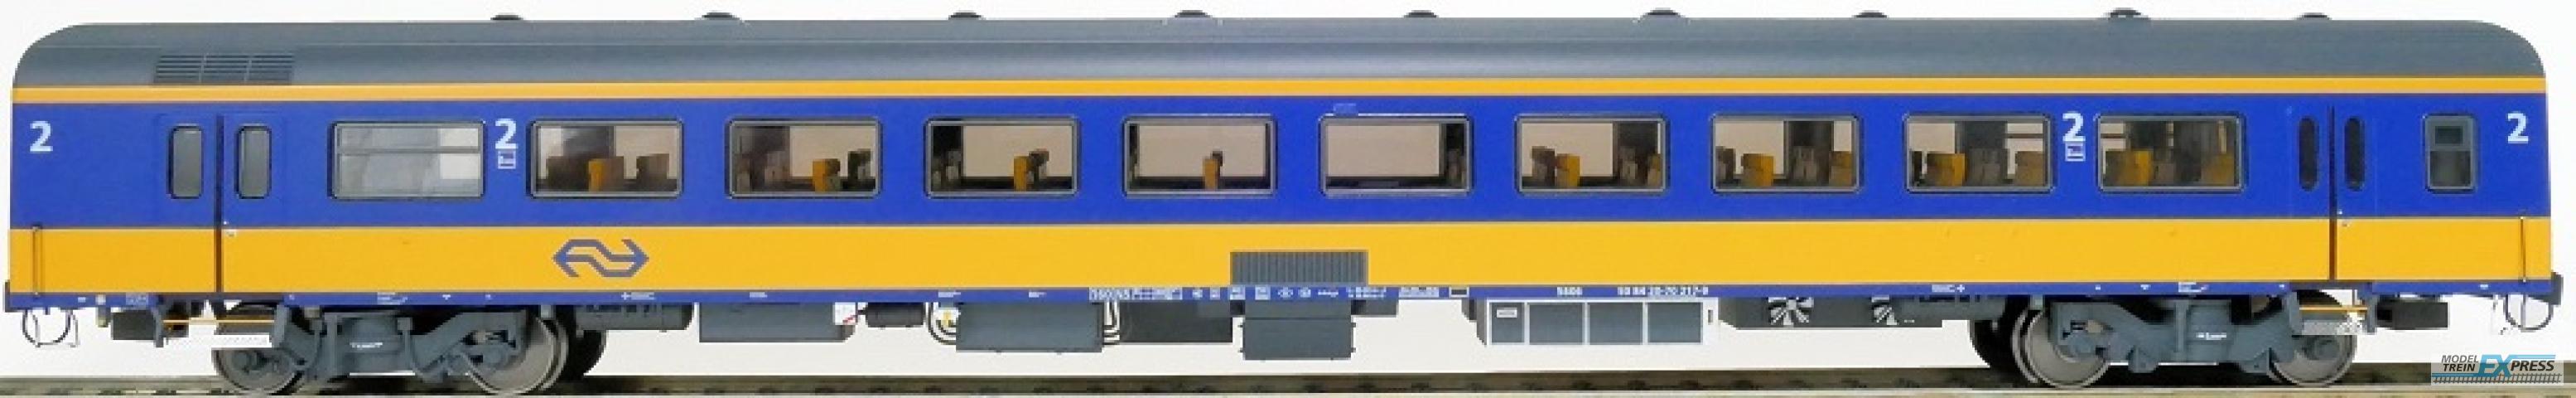 Exact-train 11101 NS ICRm Garnitur 4 Reisezugwagen B( Neue farbe Gelb / Blau), Ep. V